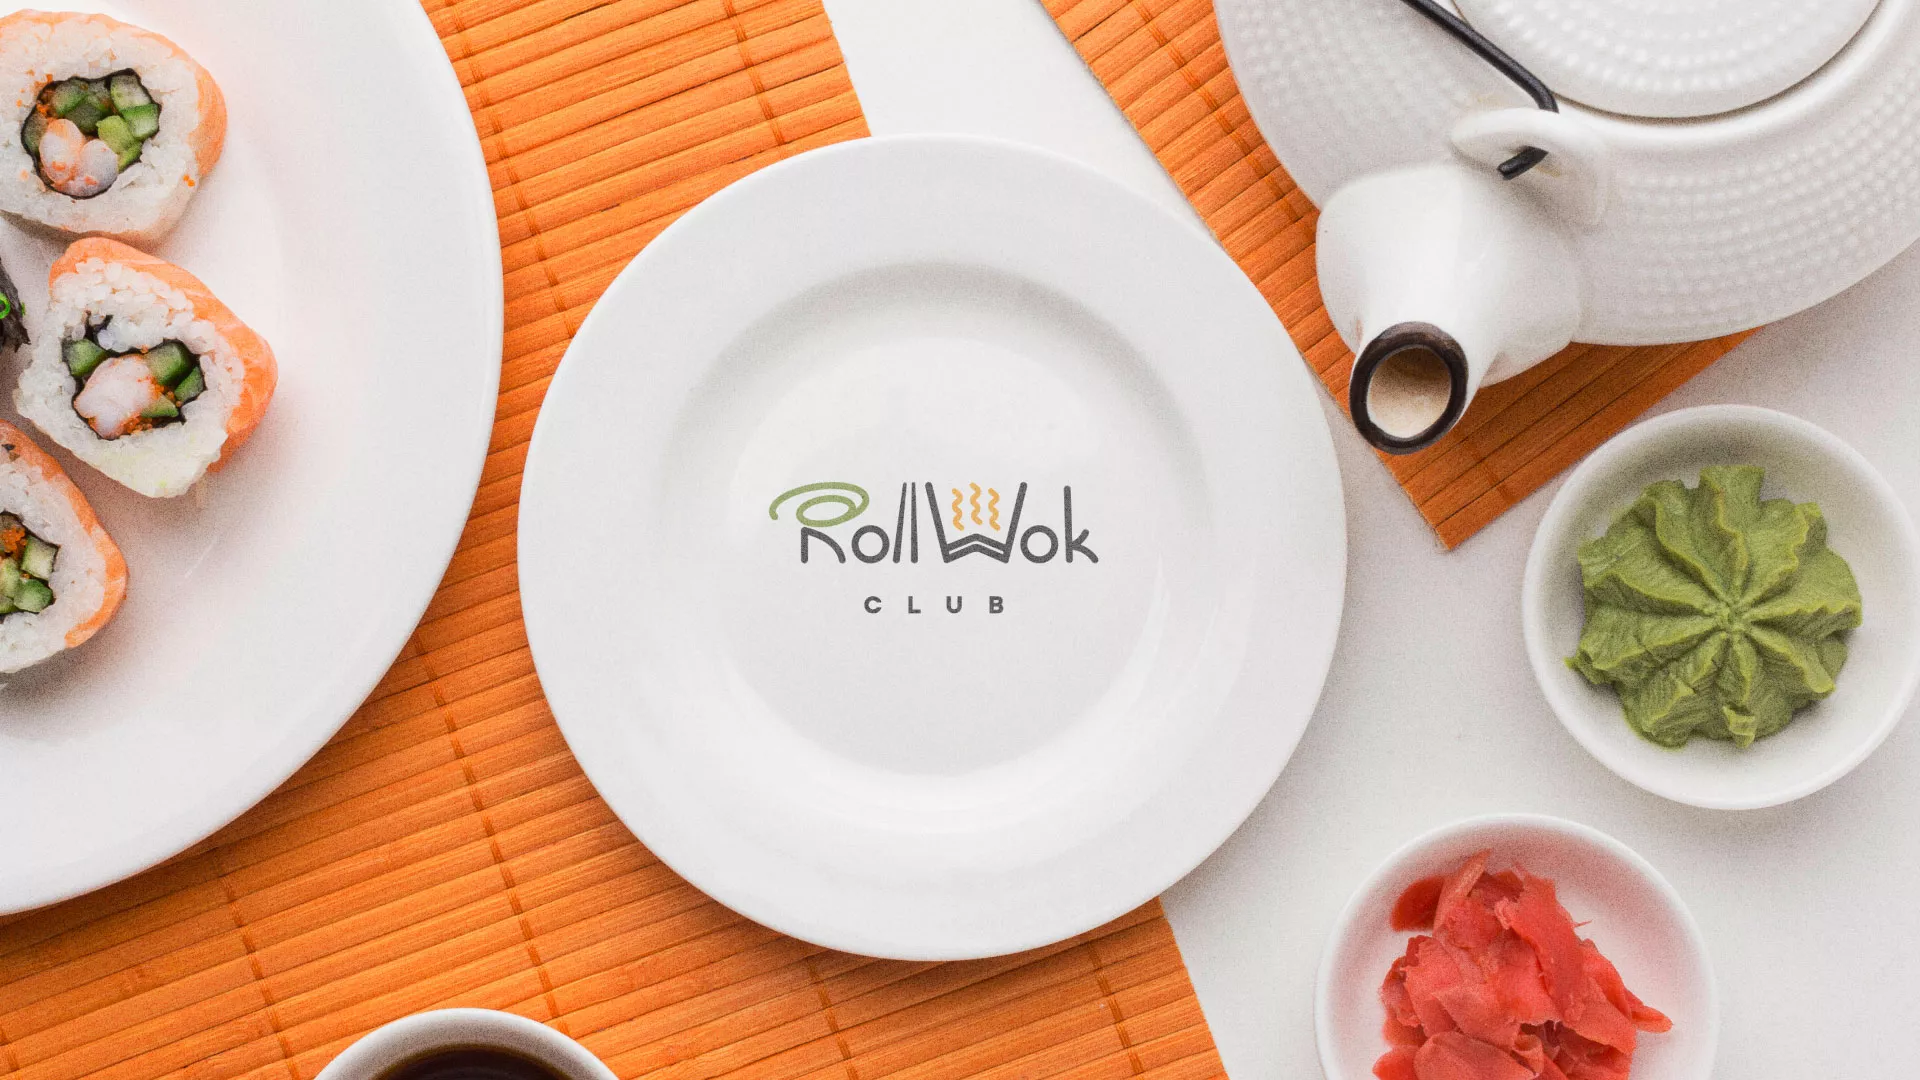 Разработка логотипа и фирменного стиля суши-бара «Roll Wok Club» в Арзамасе